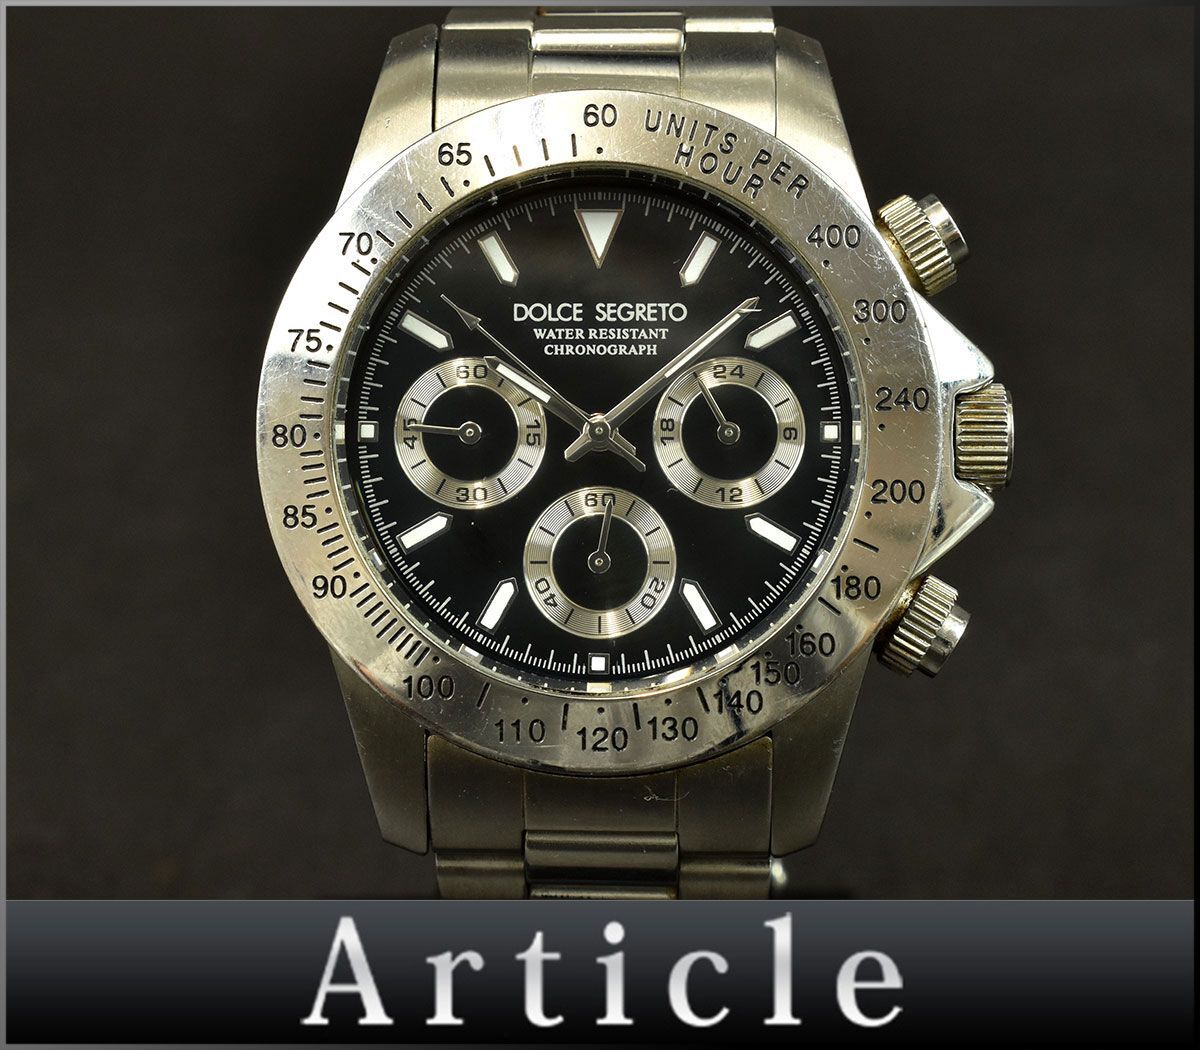 171075◇動作確認済 DOLCE SEGRETO ドルチェセグレート メンズウォッチ 腕時計 クロノグラフ クォーツ CG100 SS ブラック シルバー/ Dの画像1